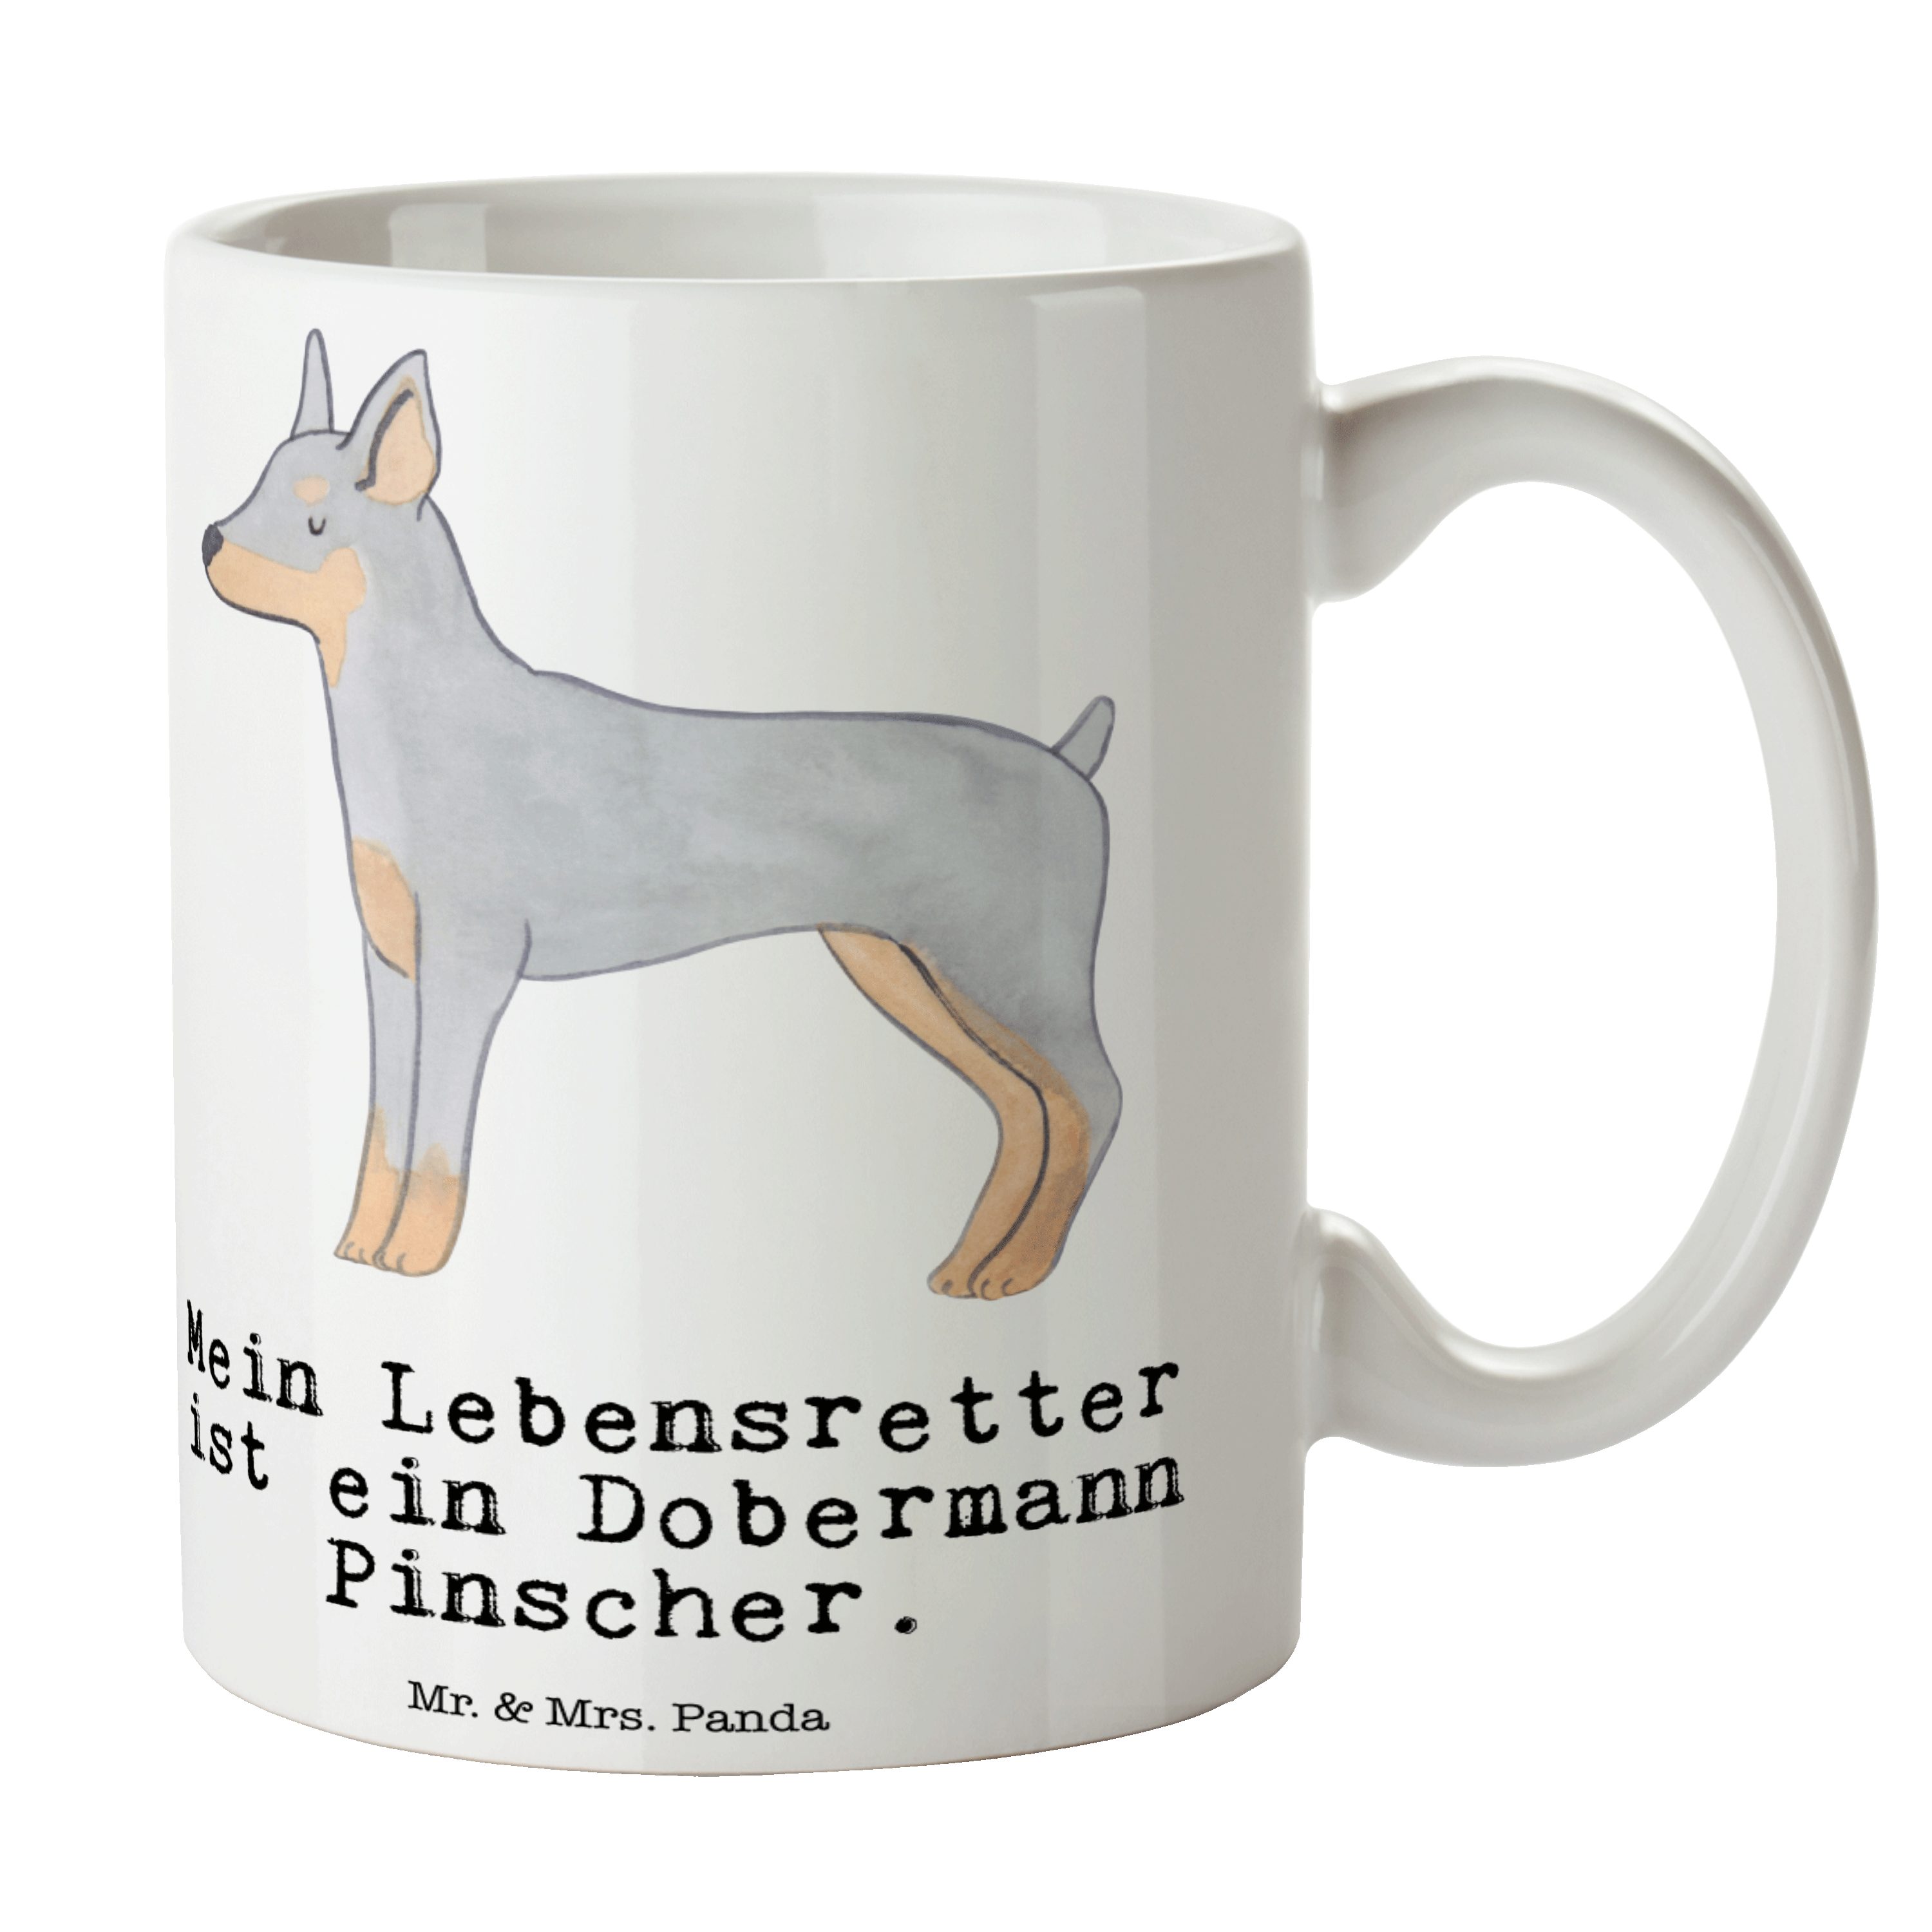 Mr. & Mrs. Panda Tasse Dobermann Pinscher Lebensretter - Weiß - Geschenk, Teetasse, Teebeche, Keramik